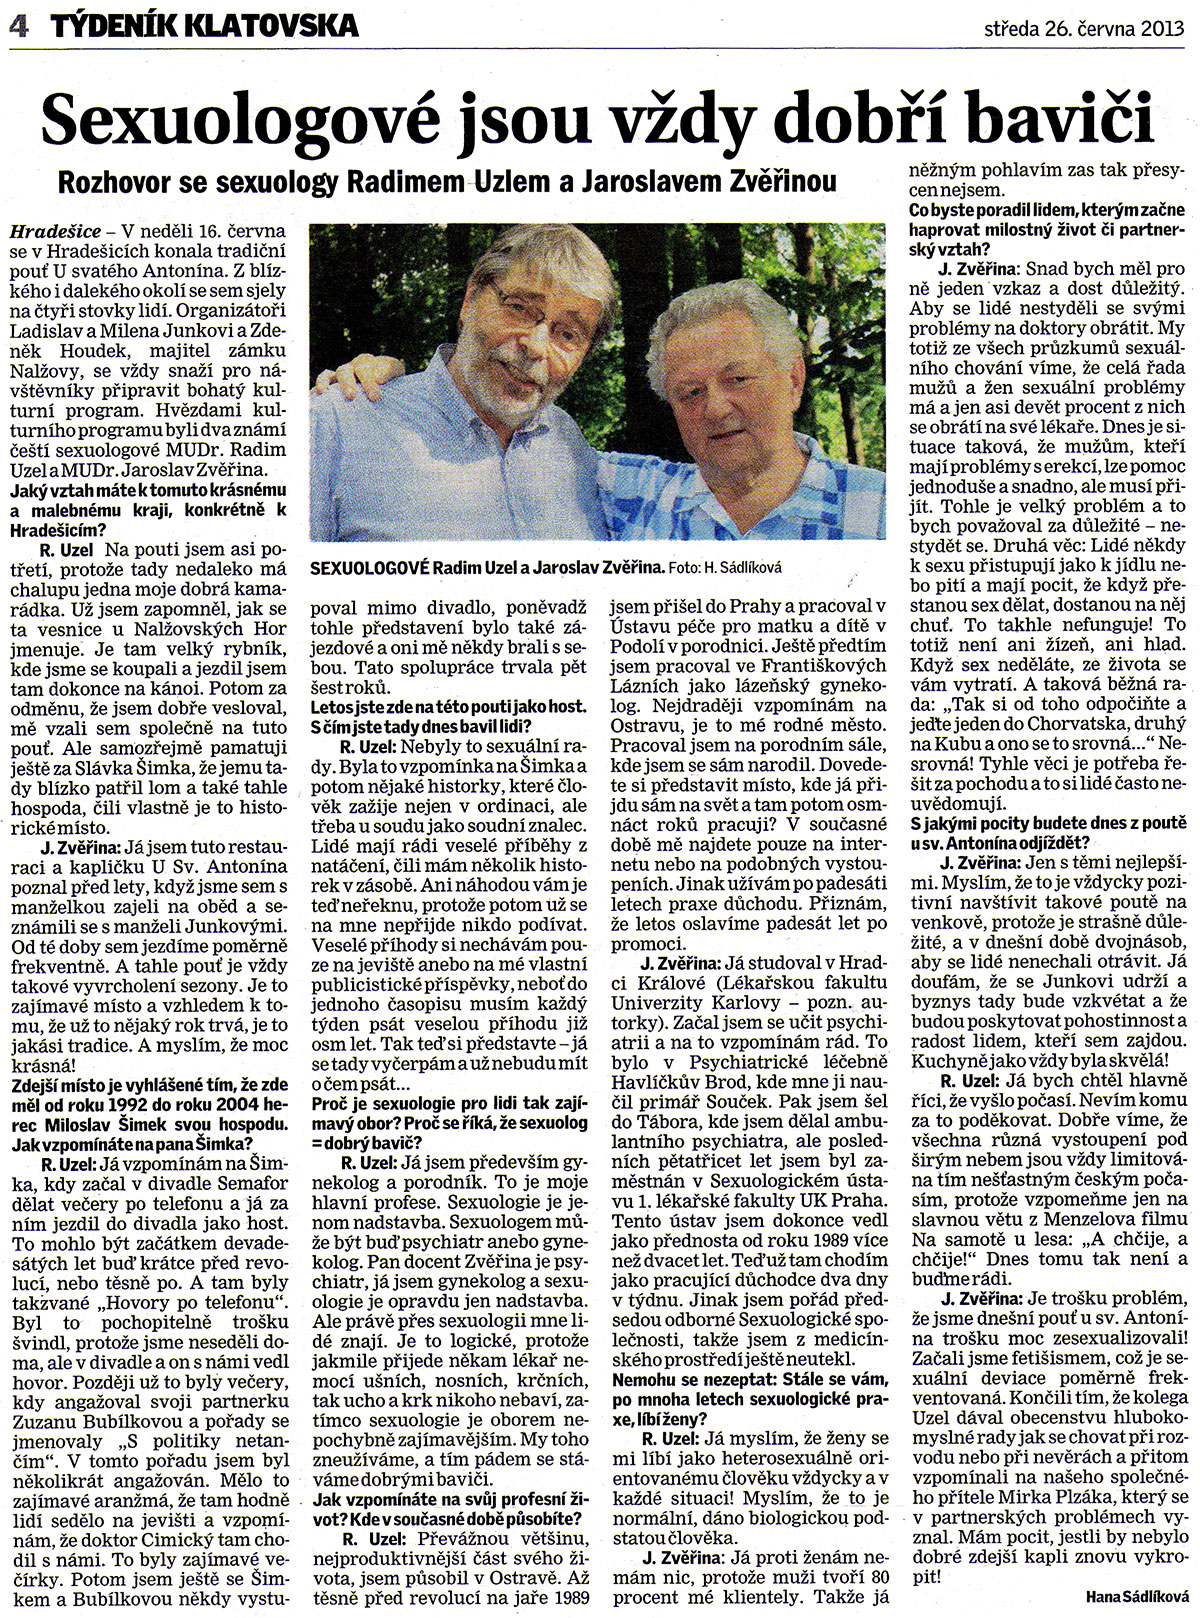 Sexuologové jsou vždy dobří baviči, Klatovský deník 26.6.2013